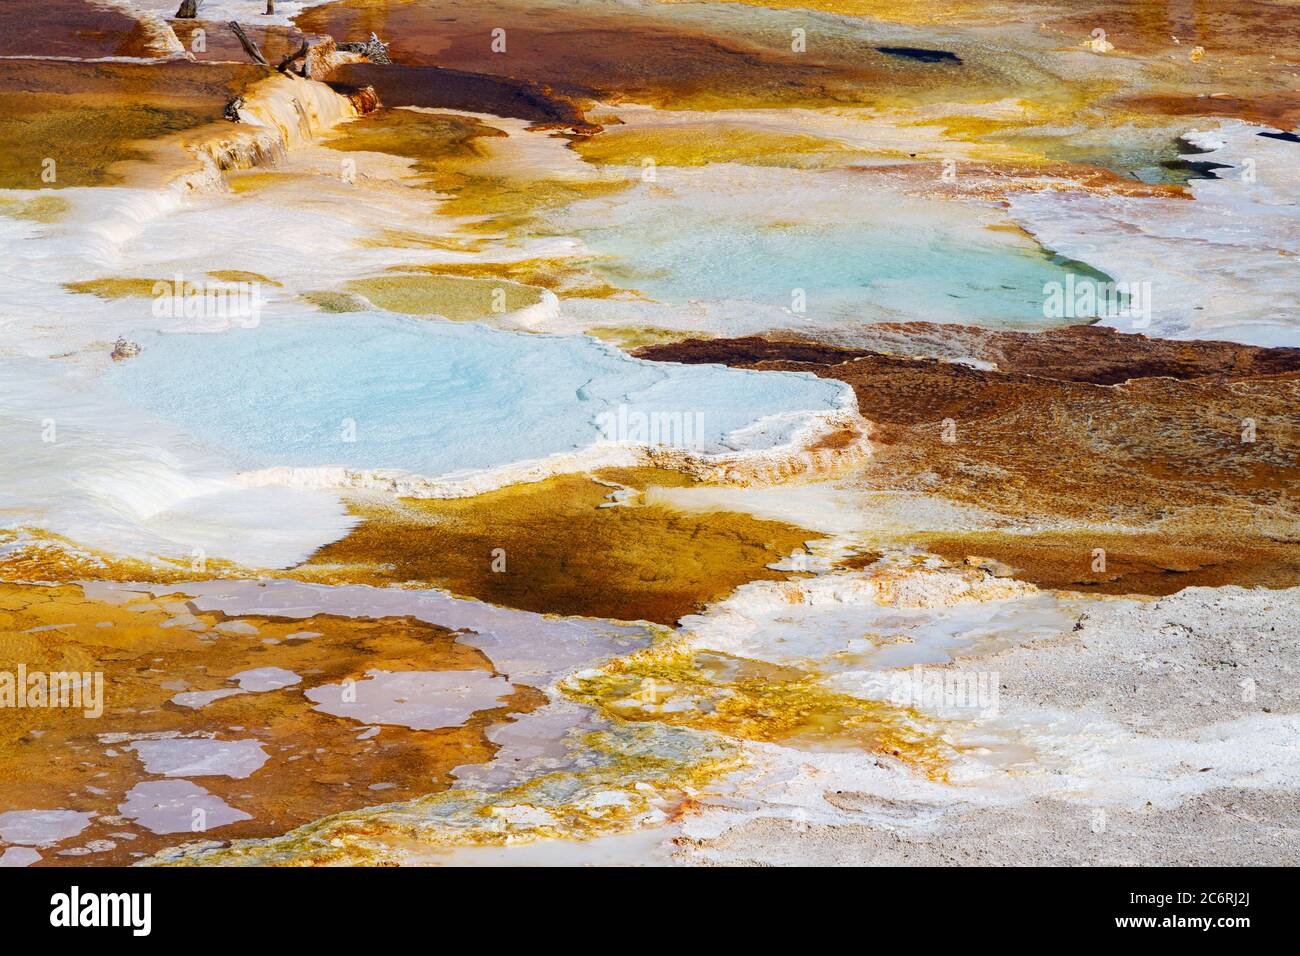 Gros plan sur les sources chaudes et les formations de travertin à la terrasse principale de Mammoth Hot Springs dans le parc national de Yellowstone, États-Unis. Banque D'Images